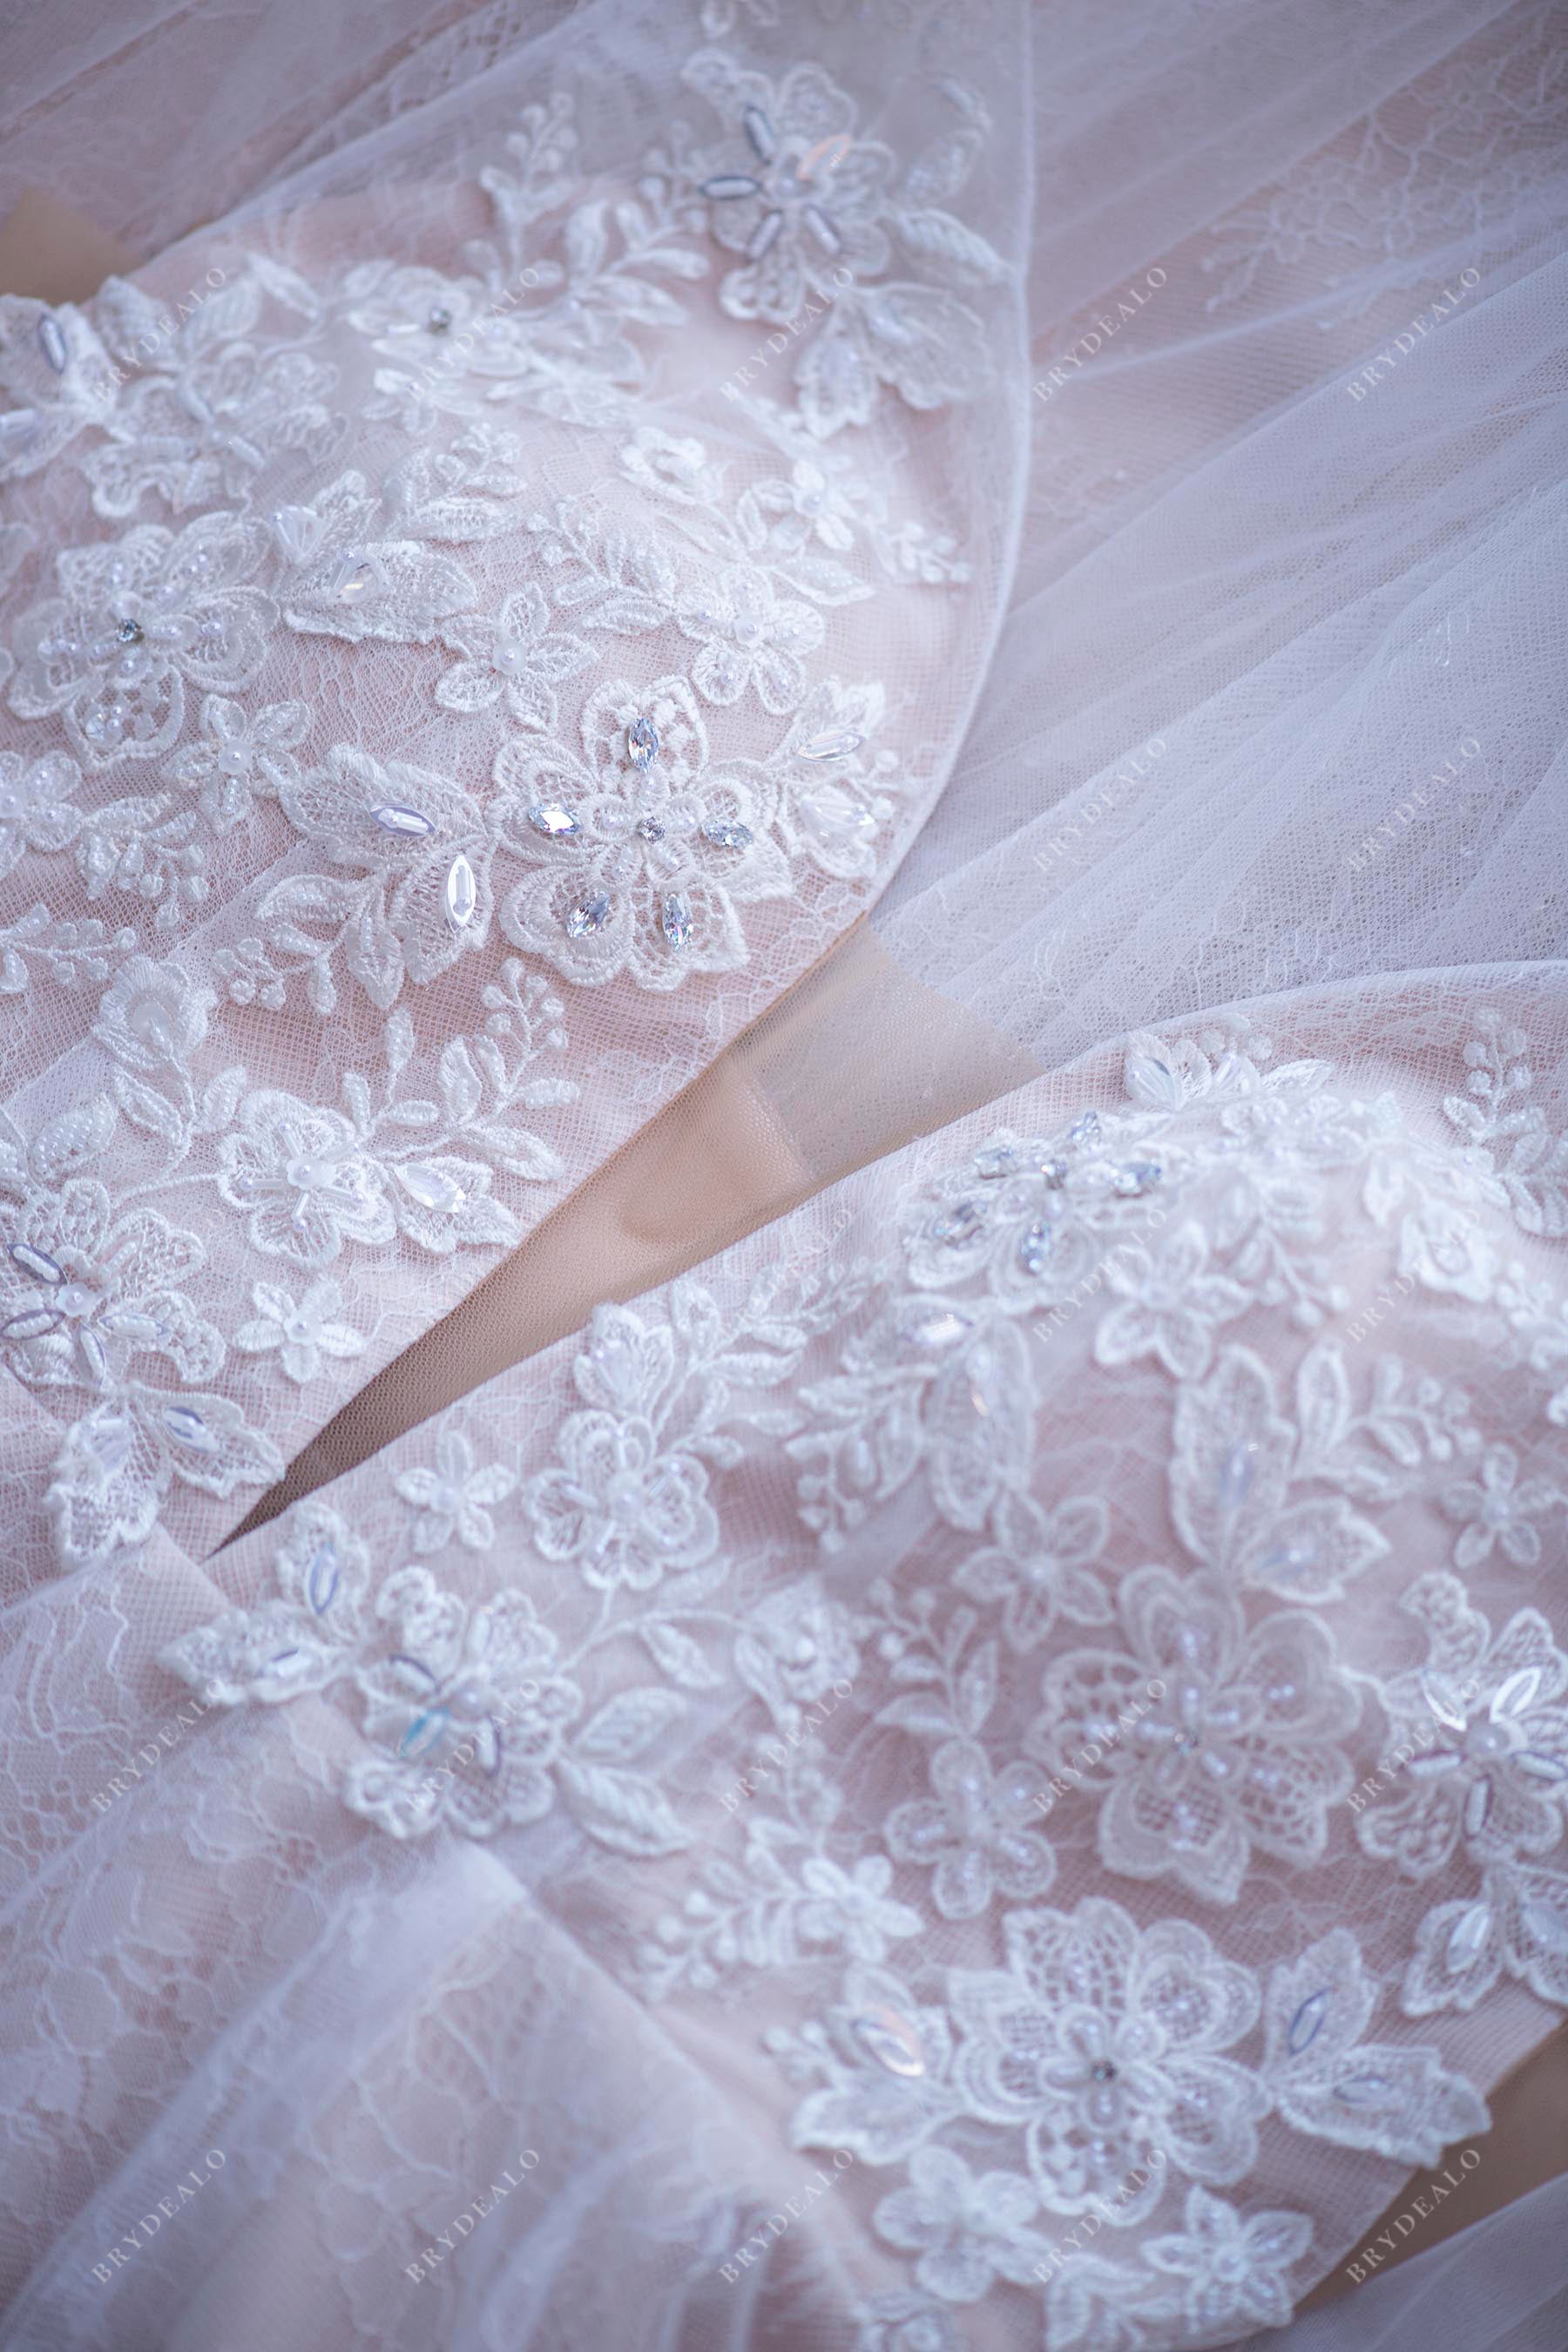 plunging neck rhinestone lace wedding dress